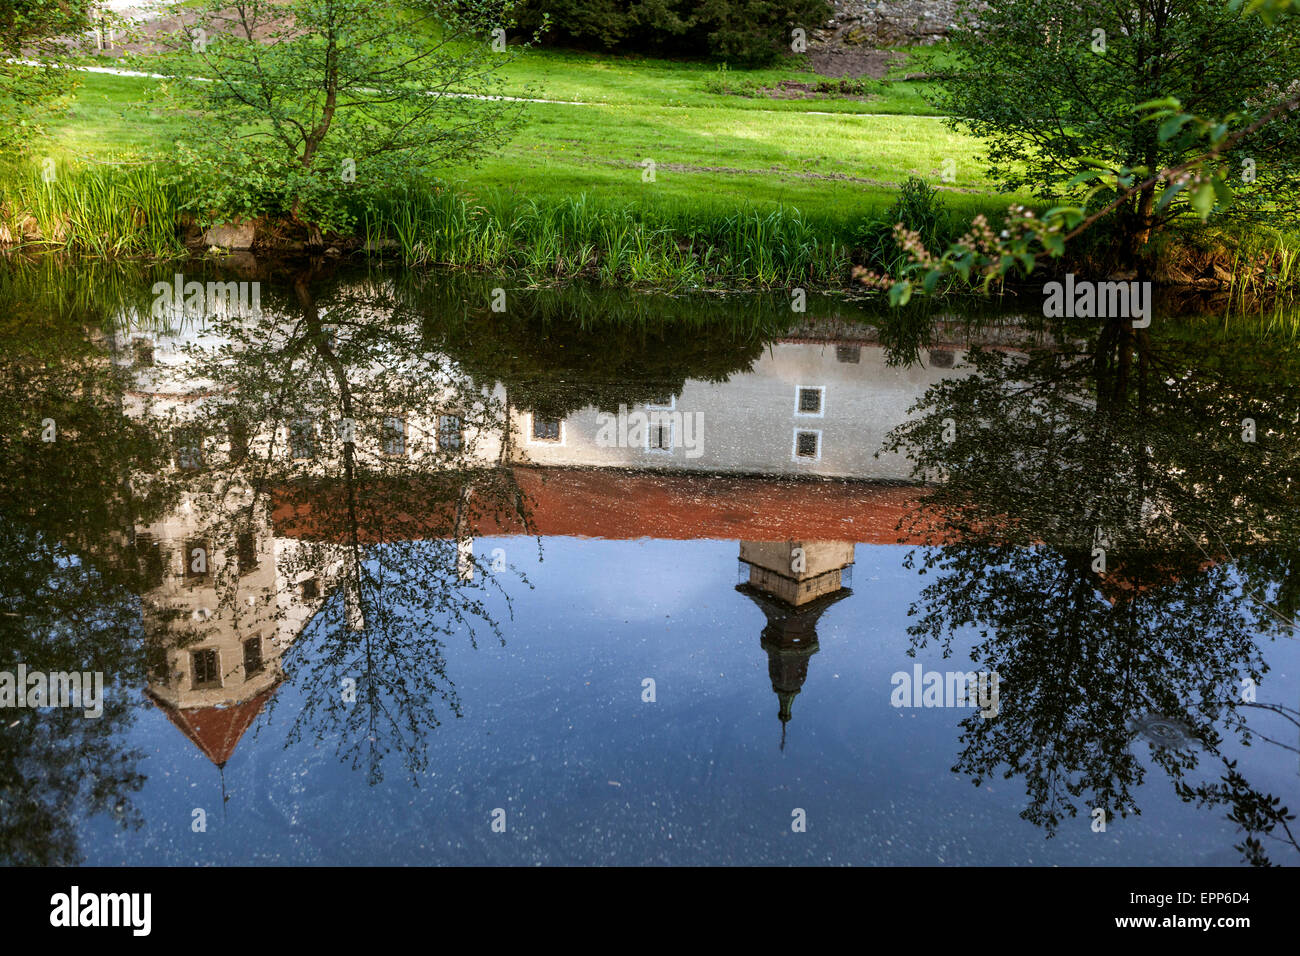 Telc, República Checa, ciudad del patrimonio mundial de la UNESCO, el castillo de la ciudad Checa de ver a través de la reflexión del estanque Foto de stock